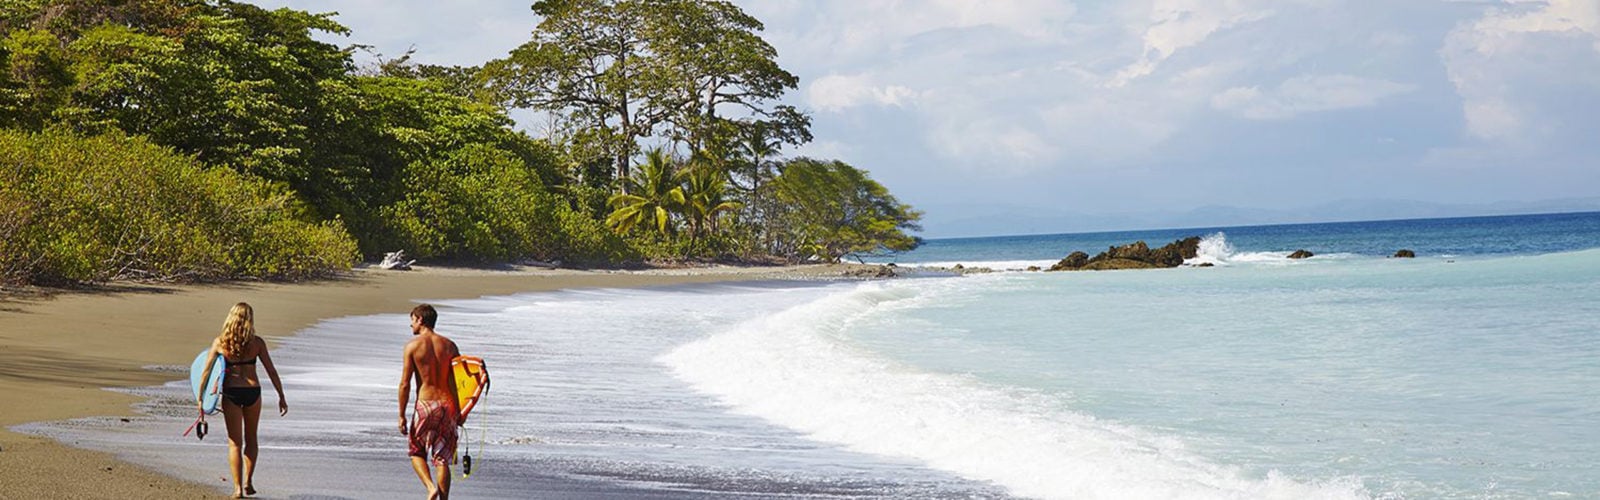 Beach Lapa Rios Costa Rica